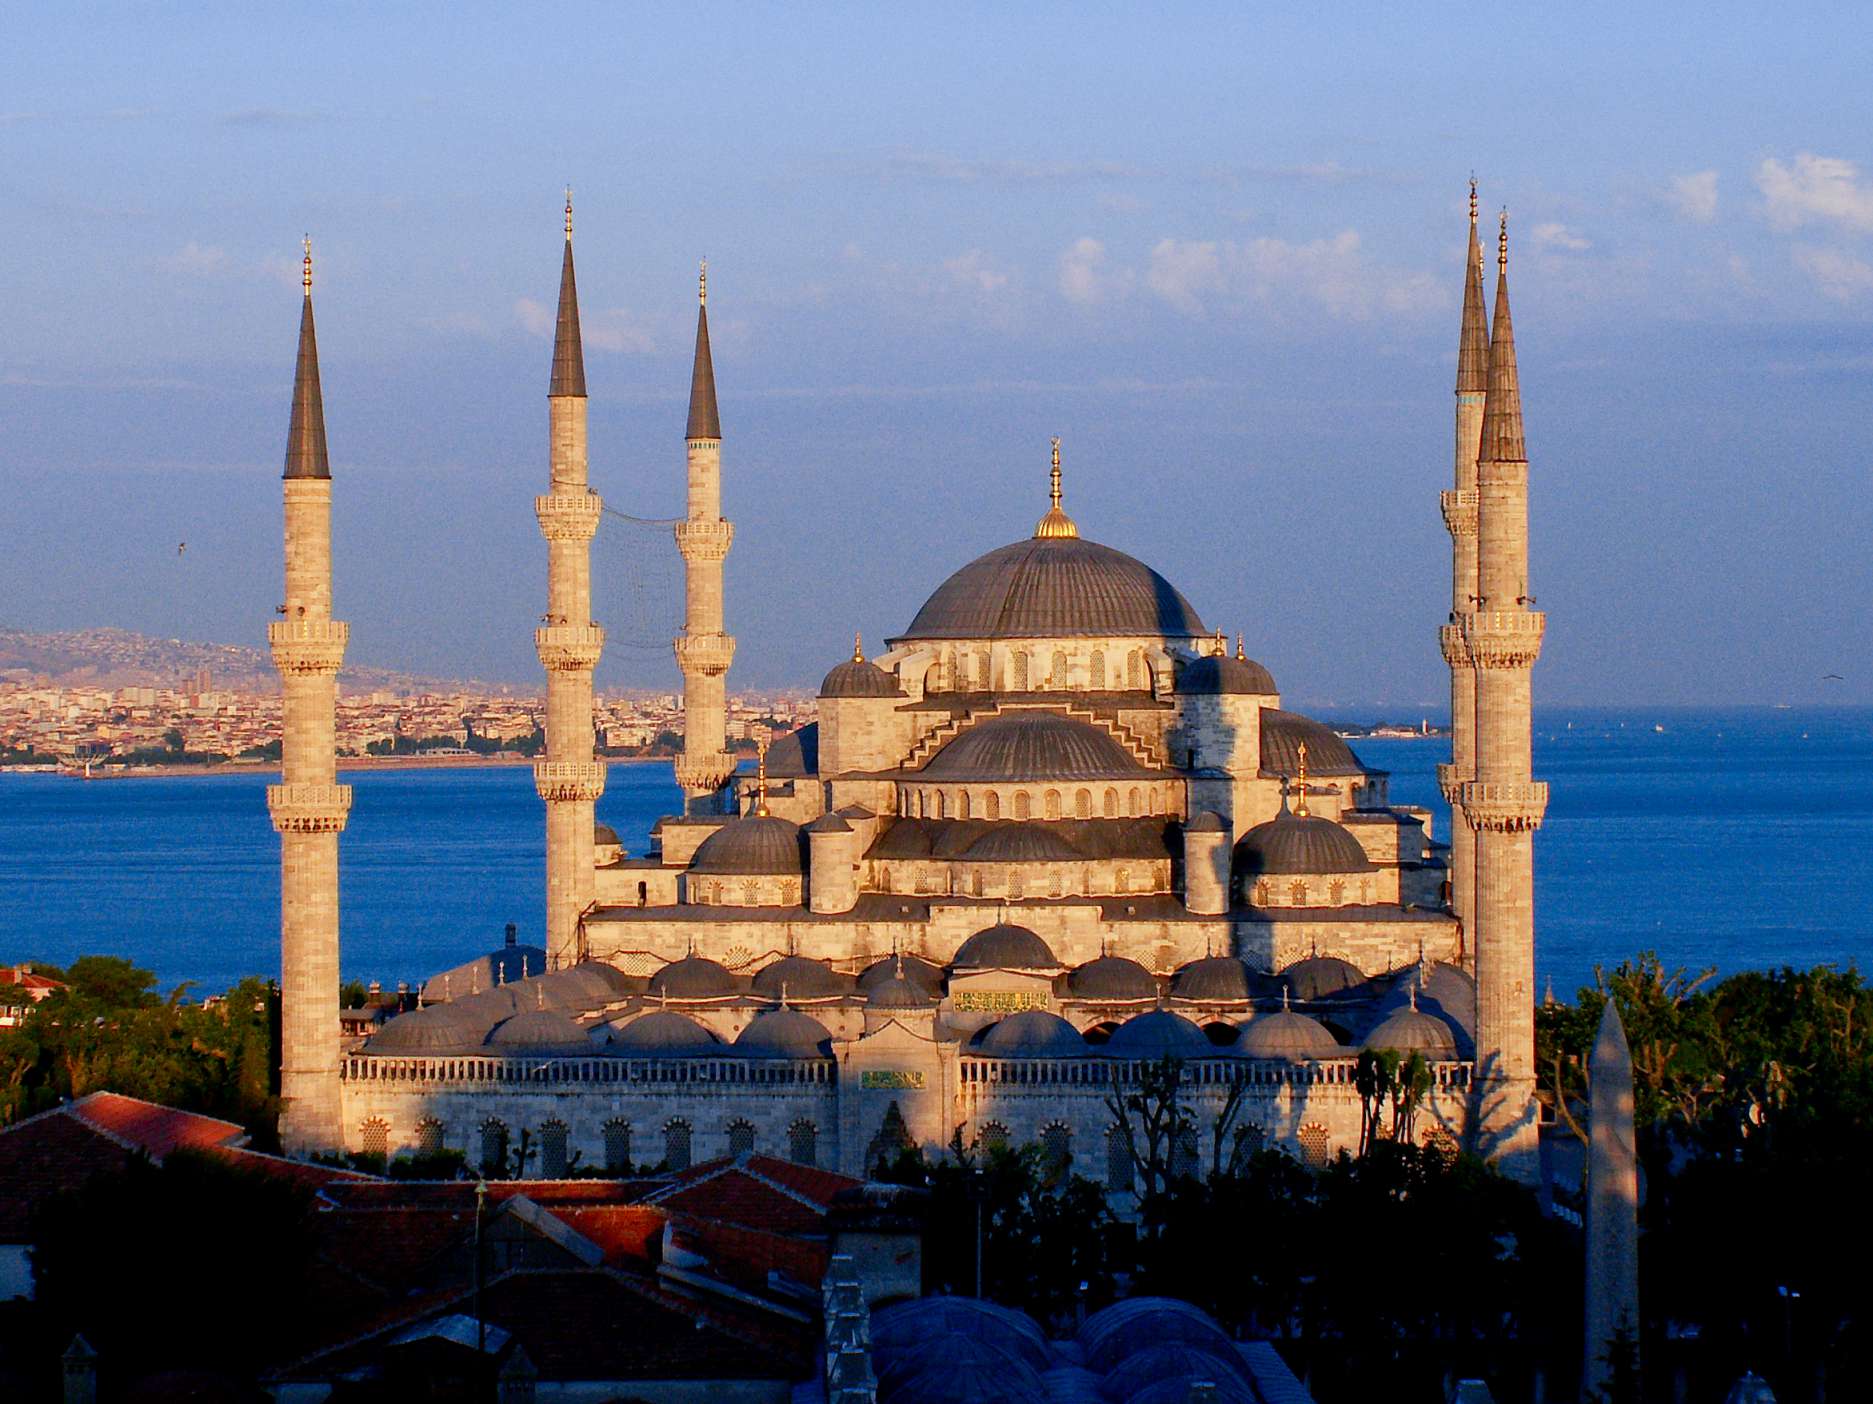 Солнечная Турция – сегодня новости туризма поведают нам о самых замечательных местах отдыха в одной из самых красивых стран мира.